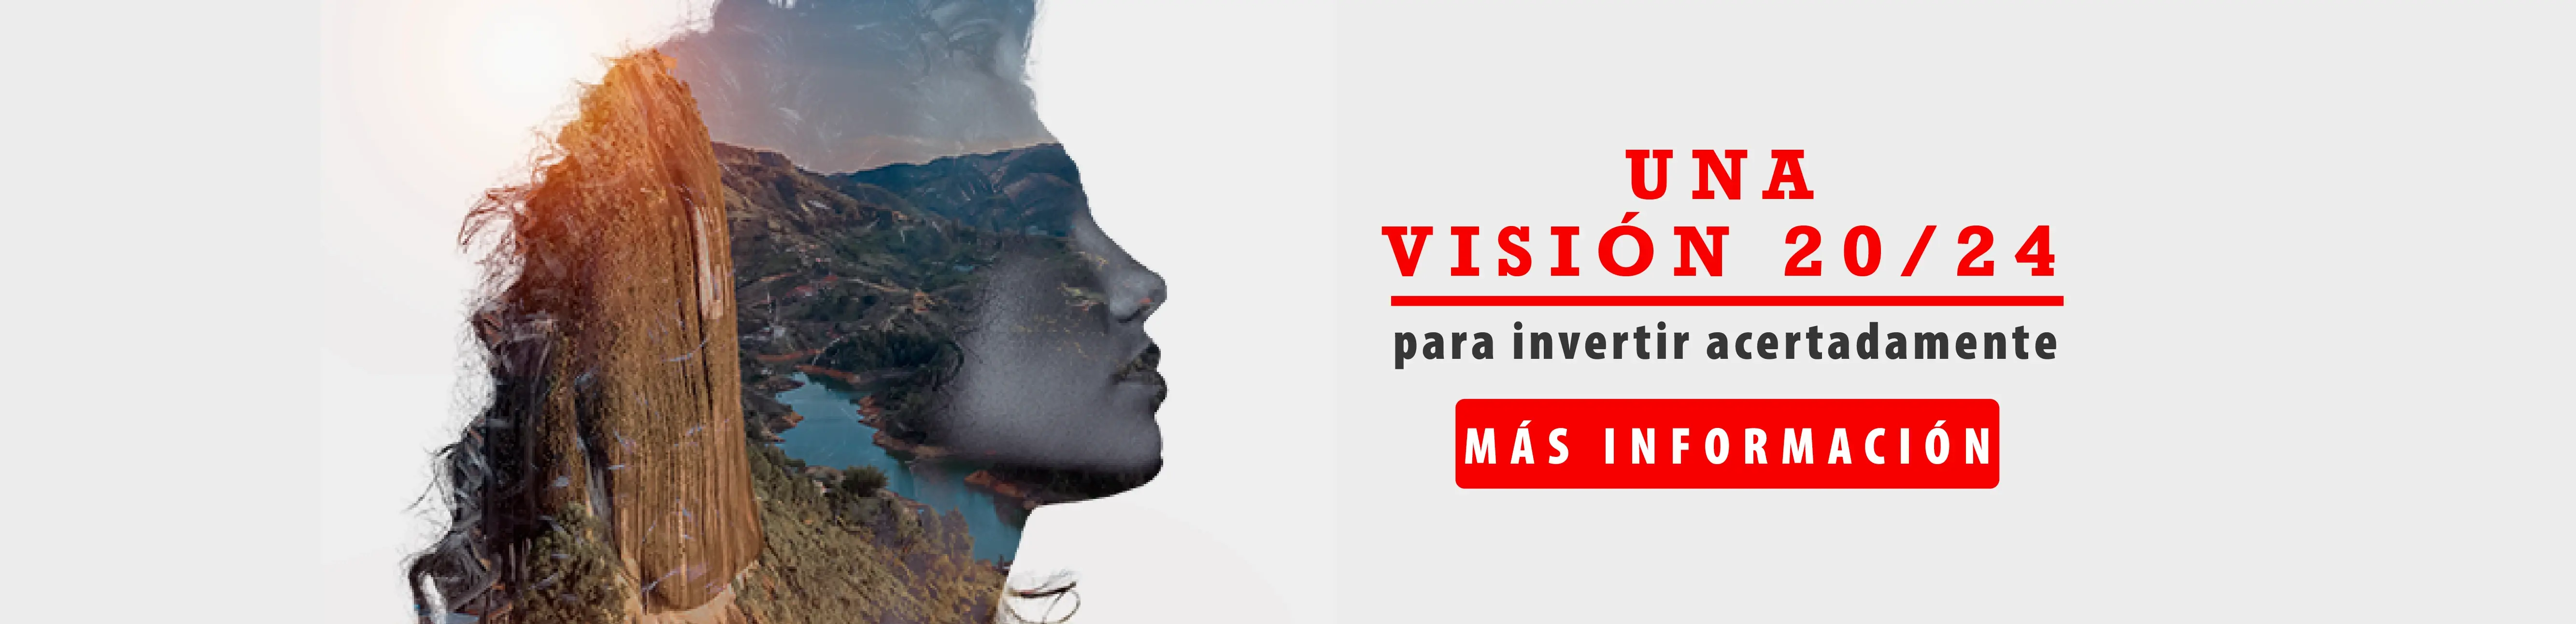 Silueta del rostro de una mujer con un ecosistema de la naturaleza Colombiana en su interior, la cual representa una visión a la economía y desarrollo del país